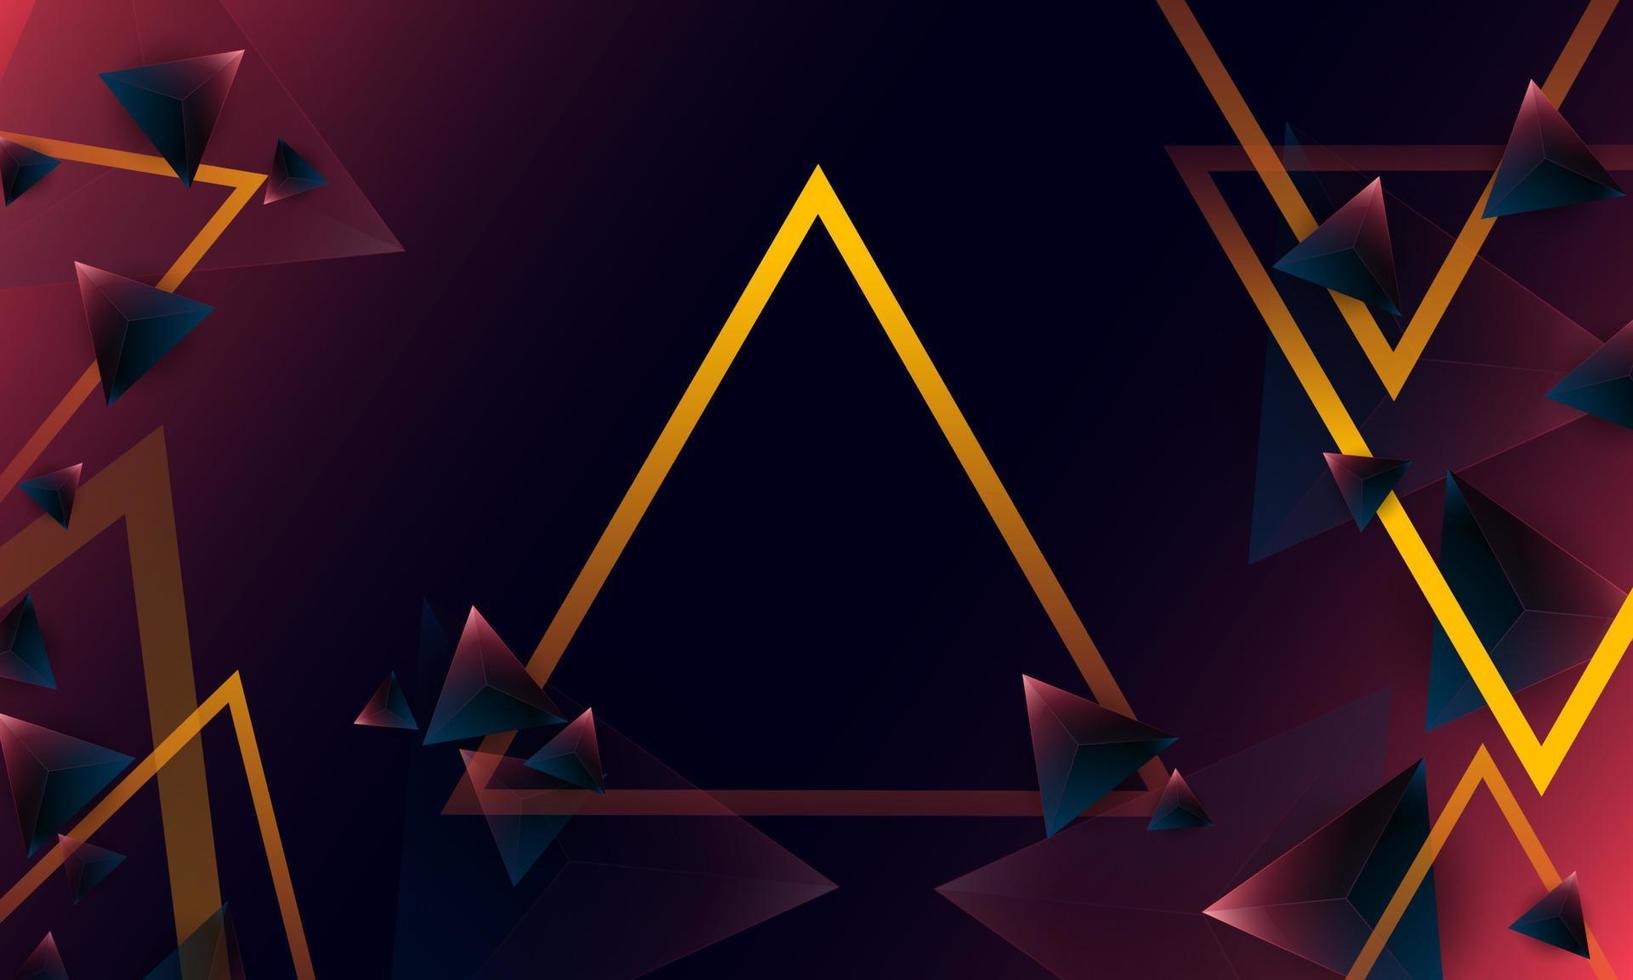 abstratos triângulos de polígono roxo escuro forma padrão no fundo. ilustração vetorial design conceito de tecnologia digital. vetor